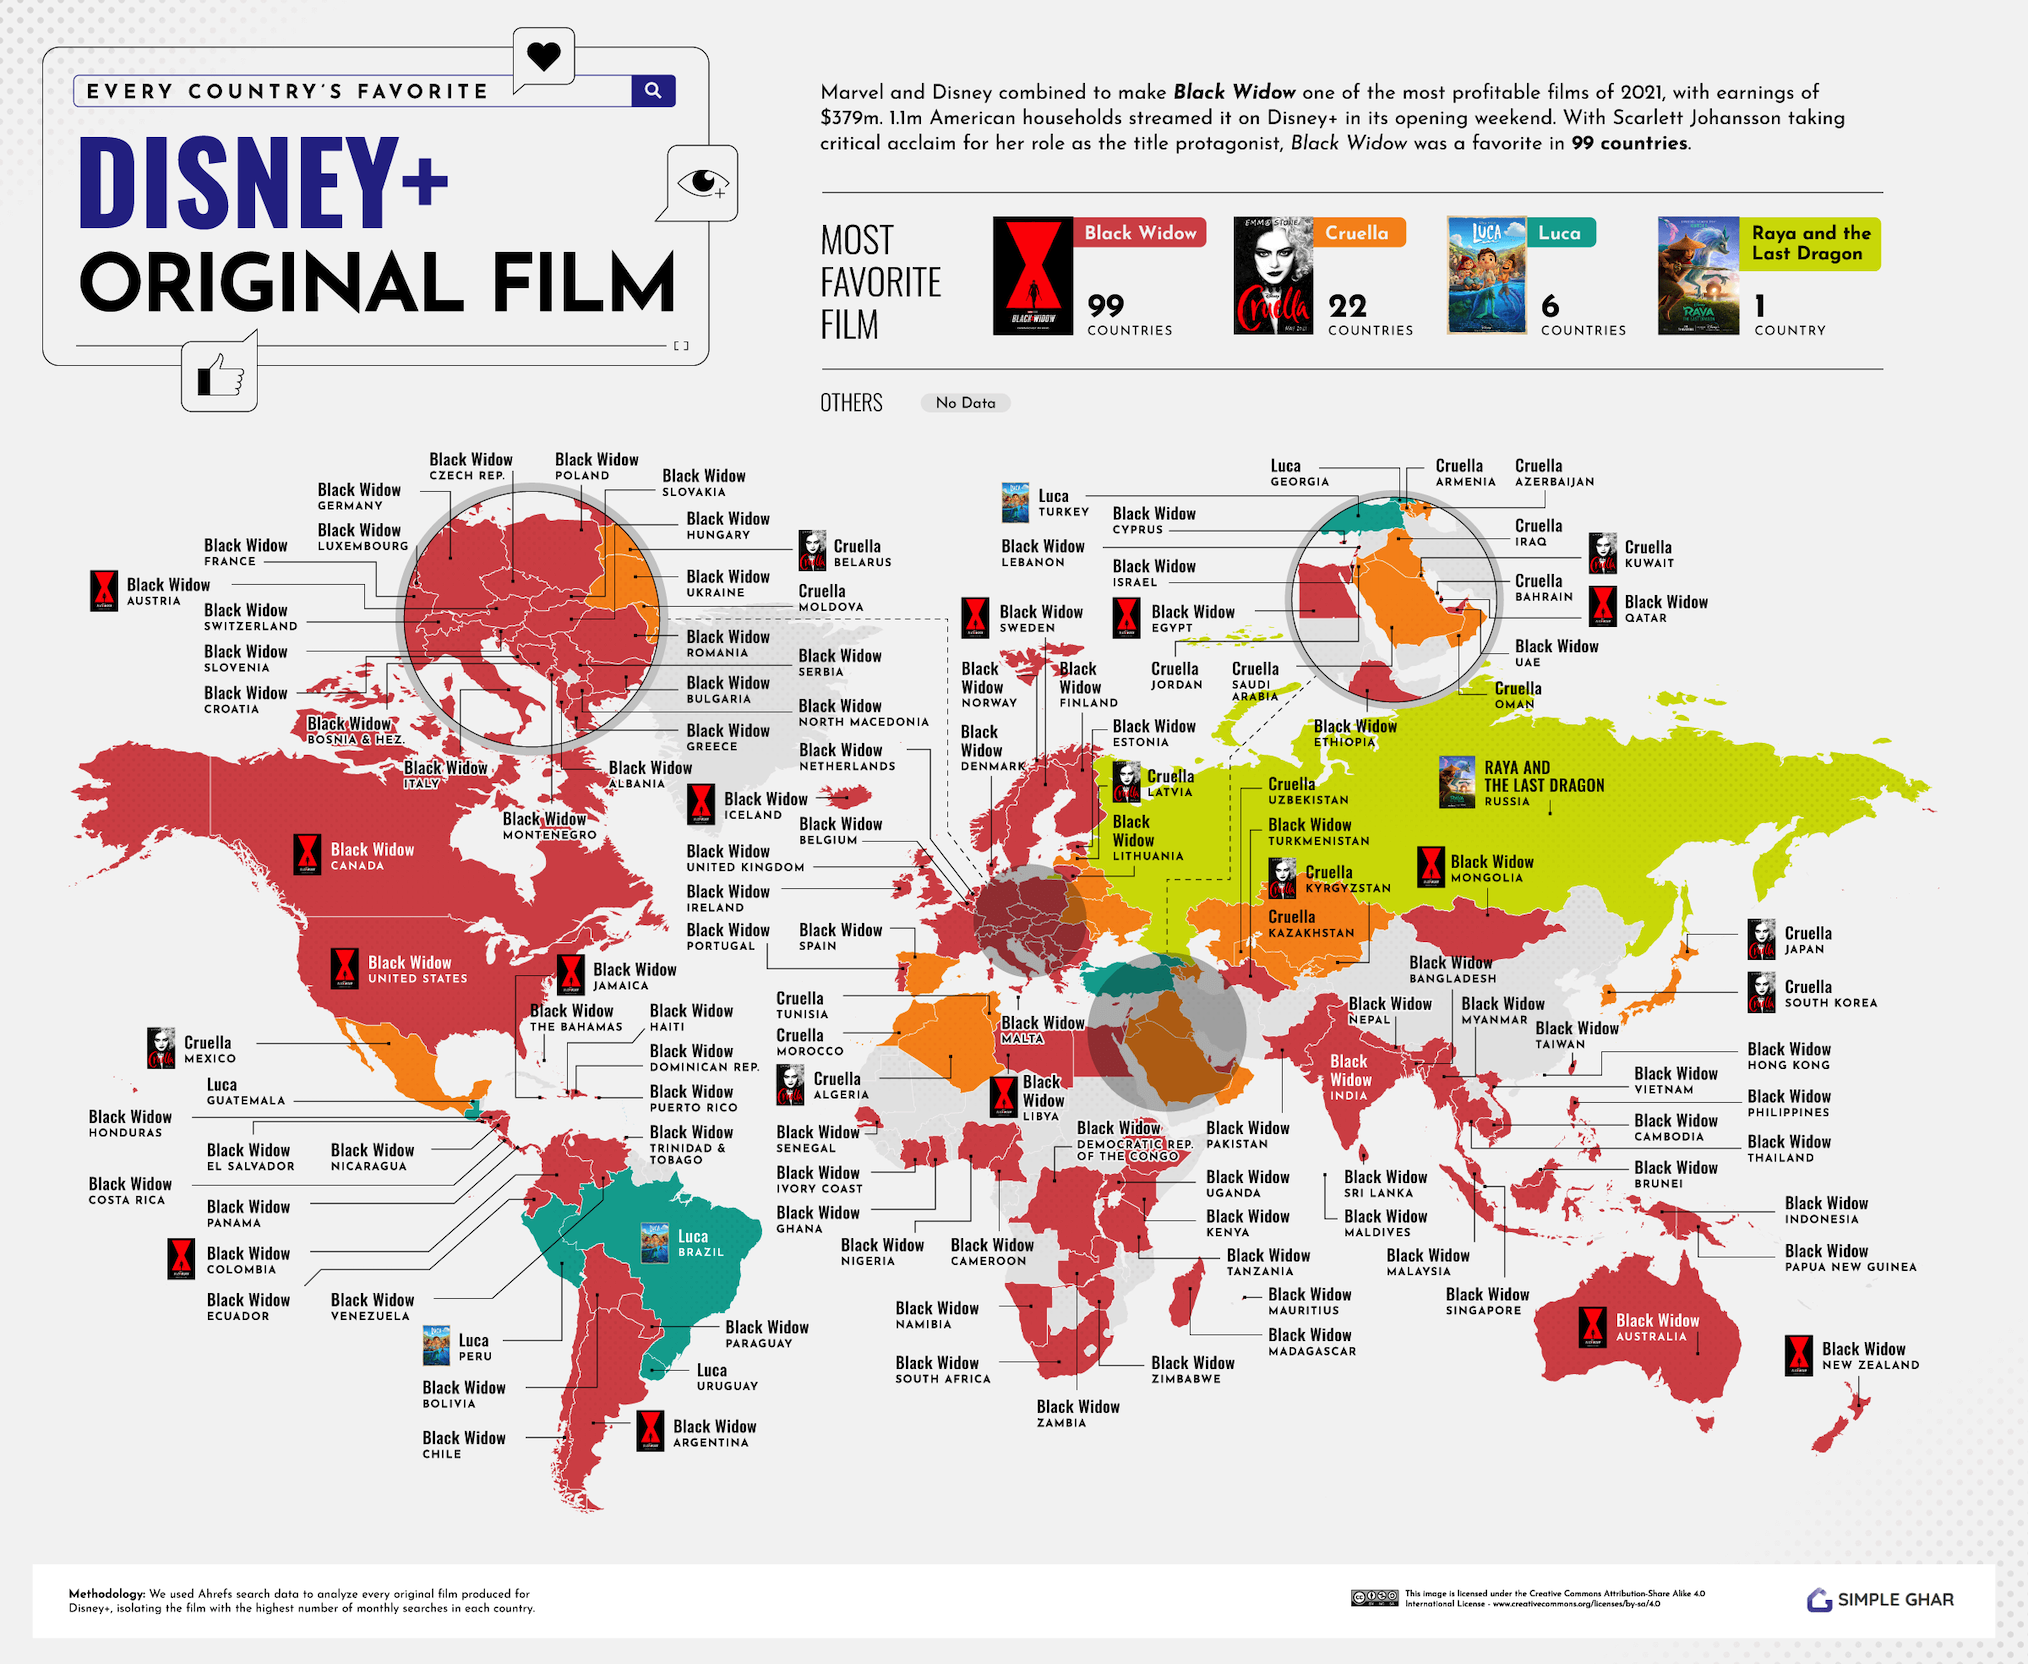 La película Disney+ favorita de todos los países